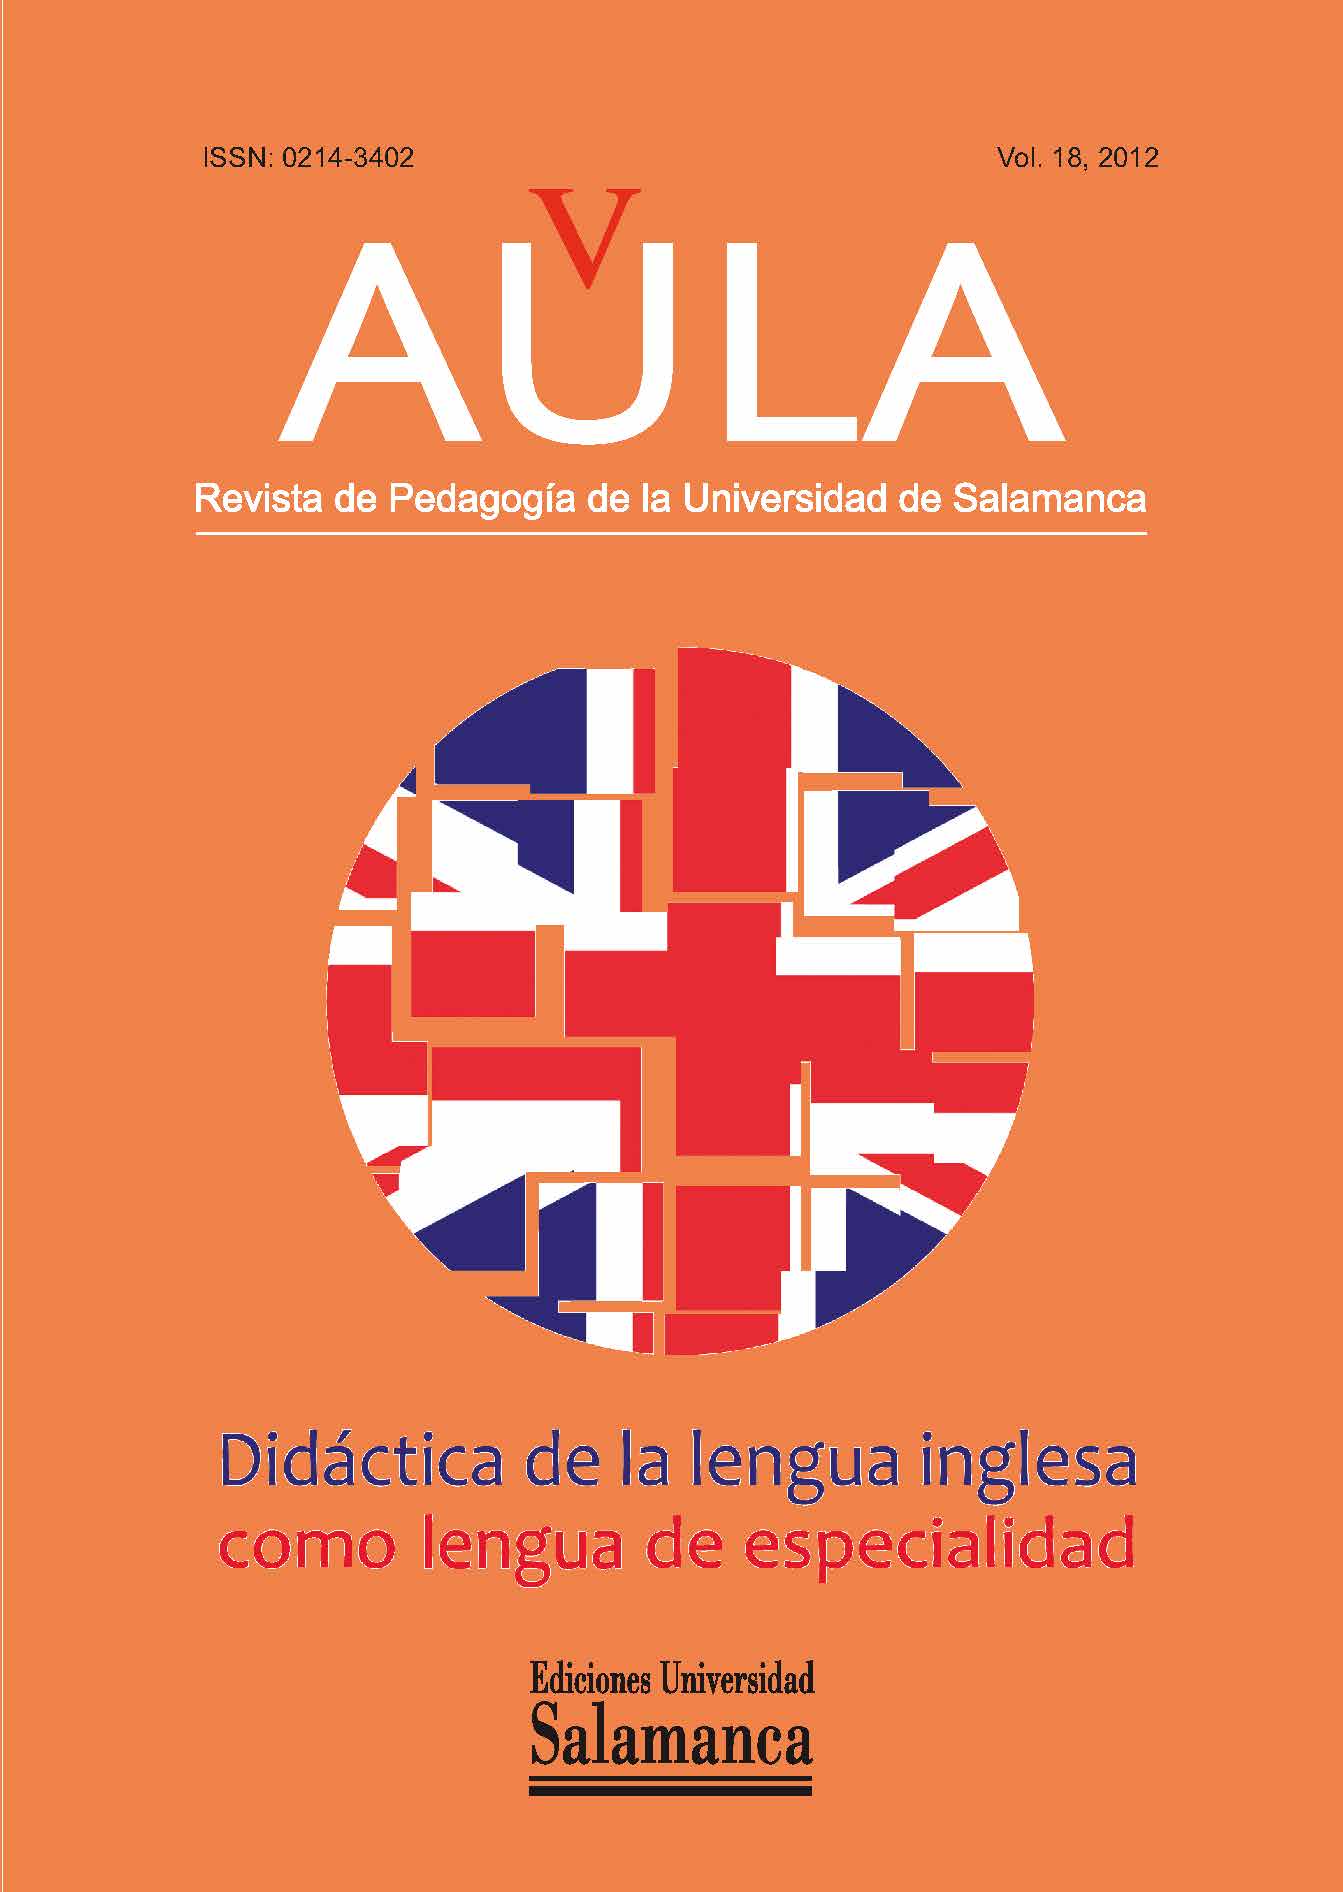                         Ver Vol. 18 (2012): Didáctica de la lengua inglesa como lengua de especialidad
                    